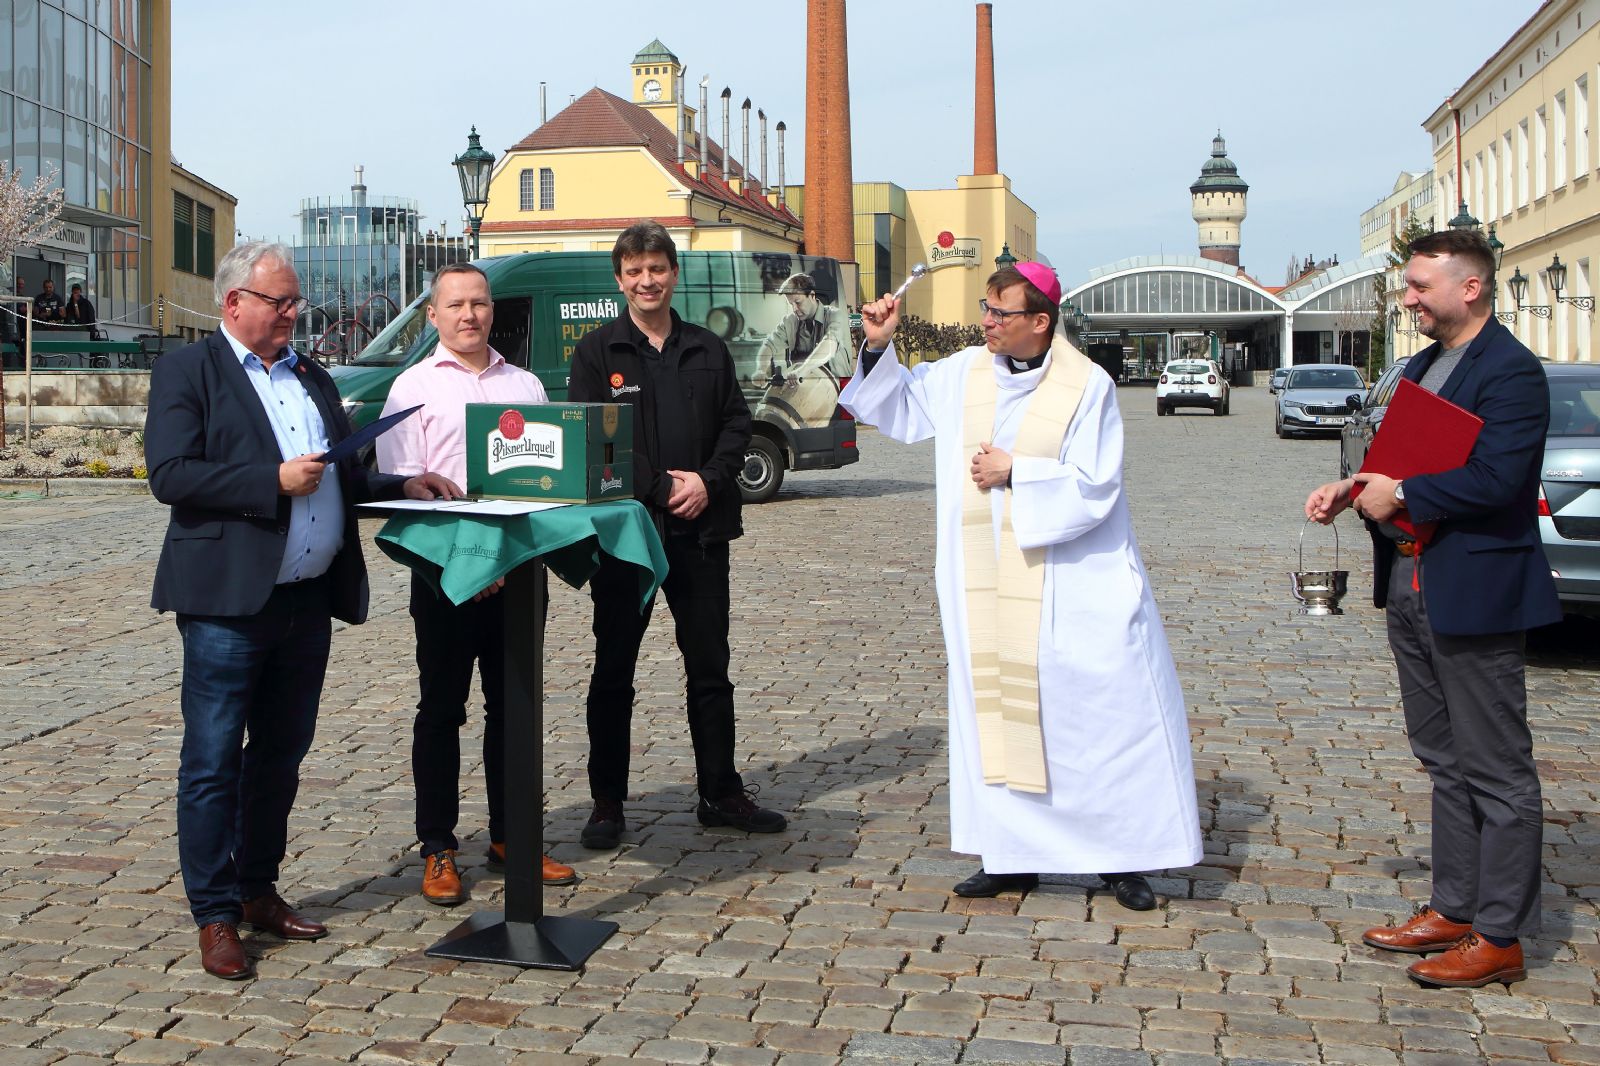 Velikonoční várka ležáku Pilsner Urquell míří k papeži Františkovi